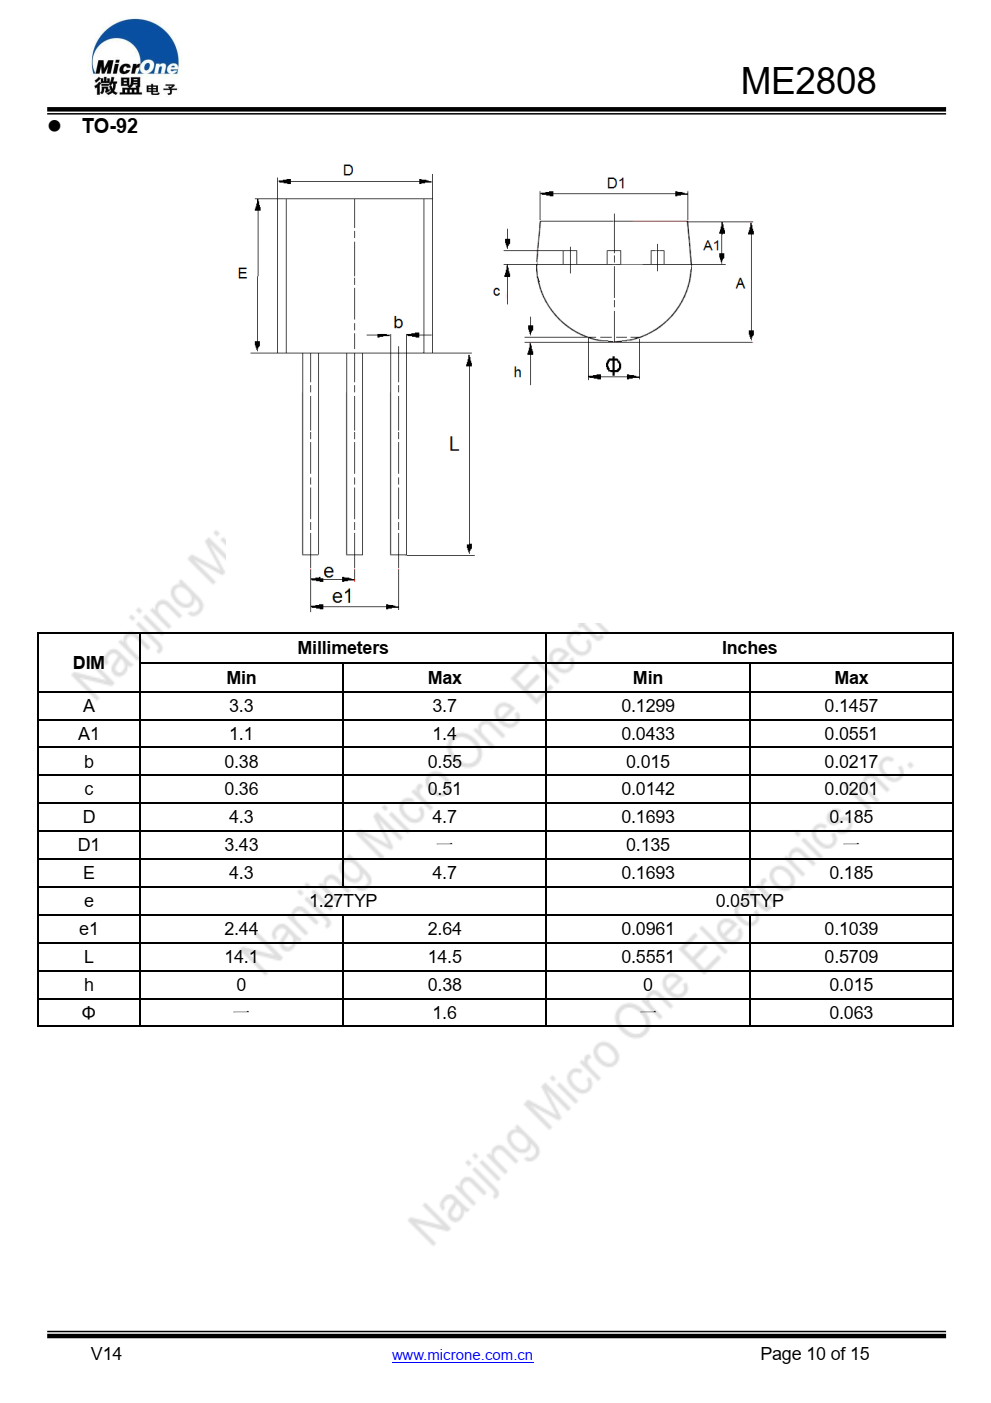 ME2808系列是一套三端低压开关  NMOS中实现的电源电压检测器  技术系列中的每个电压检测器